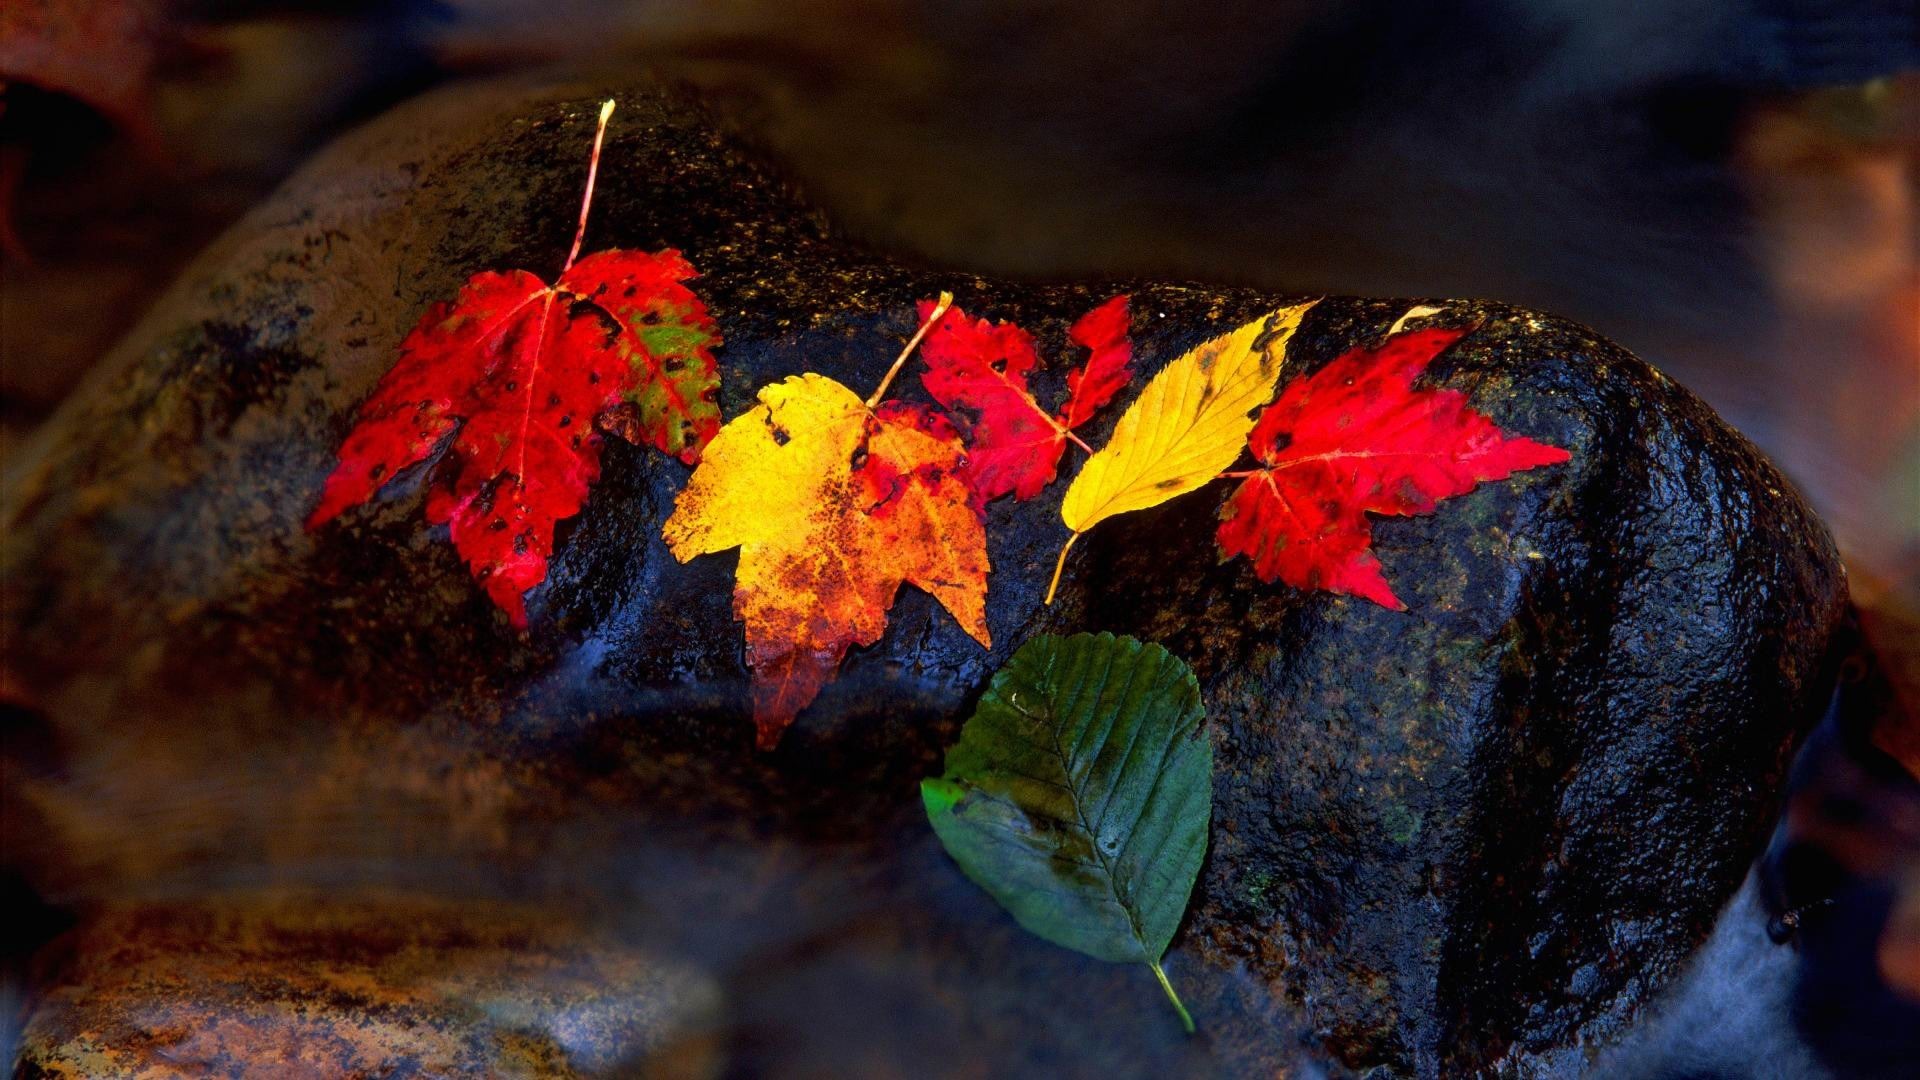 ОС Windows 8.1 HD обои темы: красивые осенние листья #11 - 1920x1080